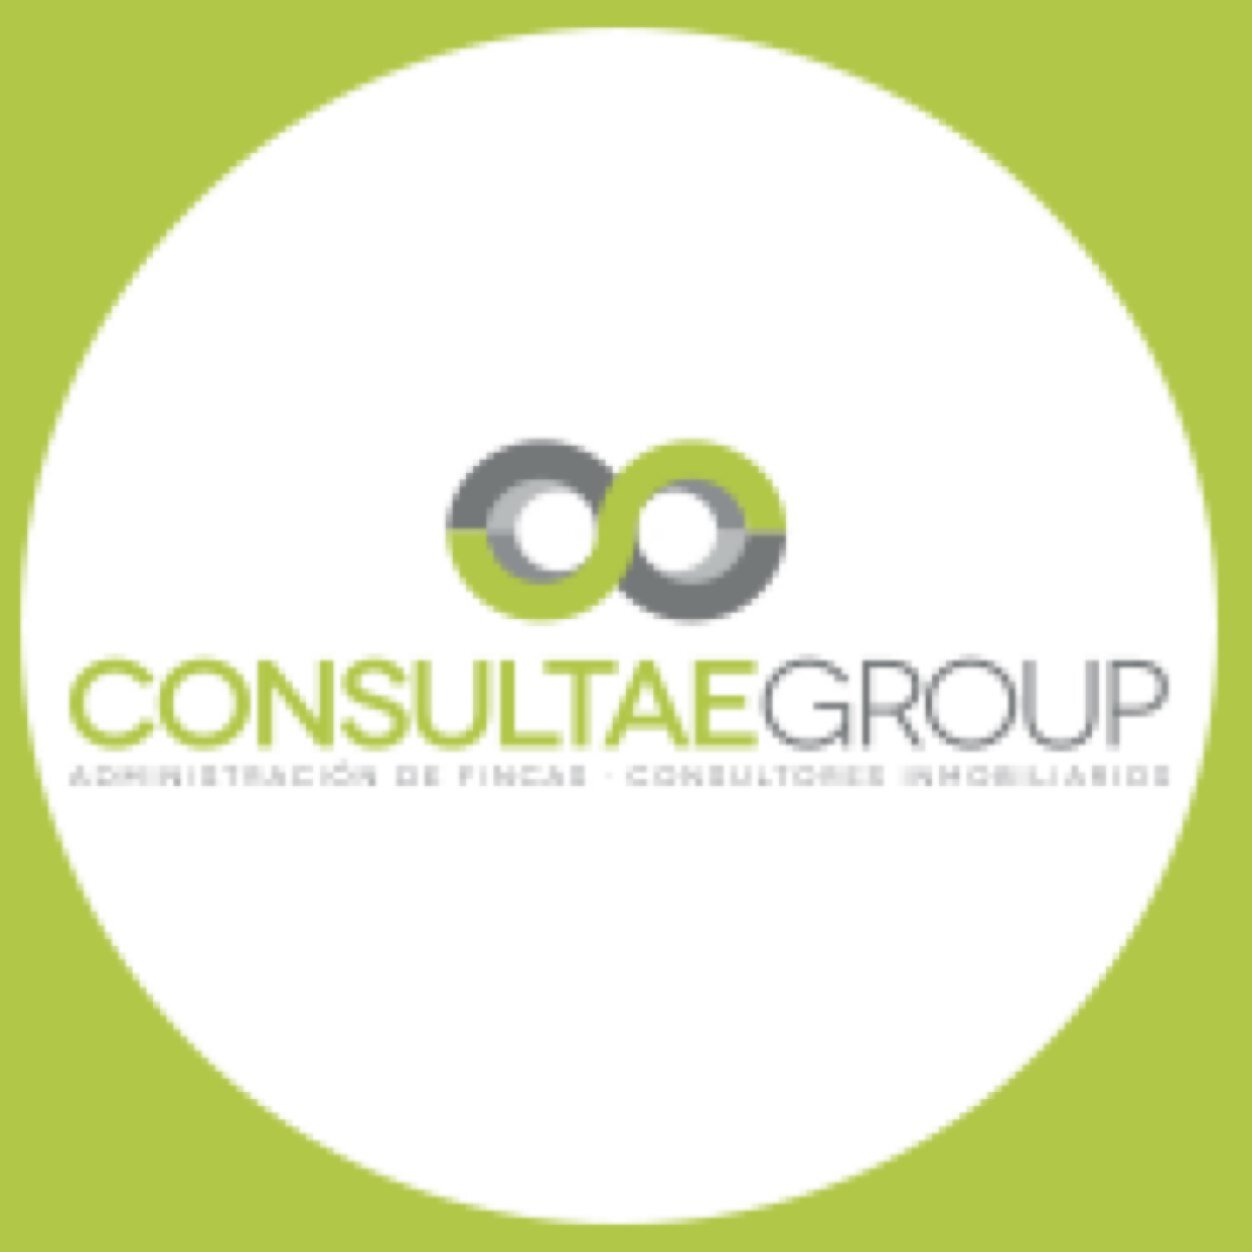 Grupo líder en Administración de Fincas y Consultoría Inmobiliaria en la Costa del Sol - Málaga